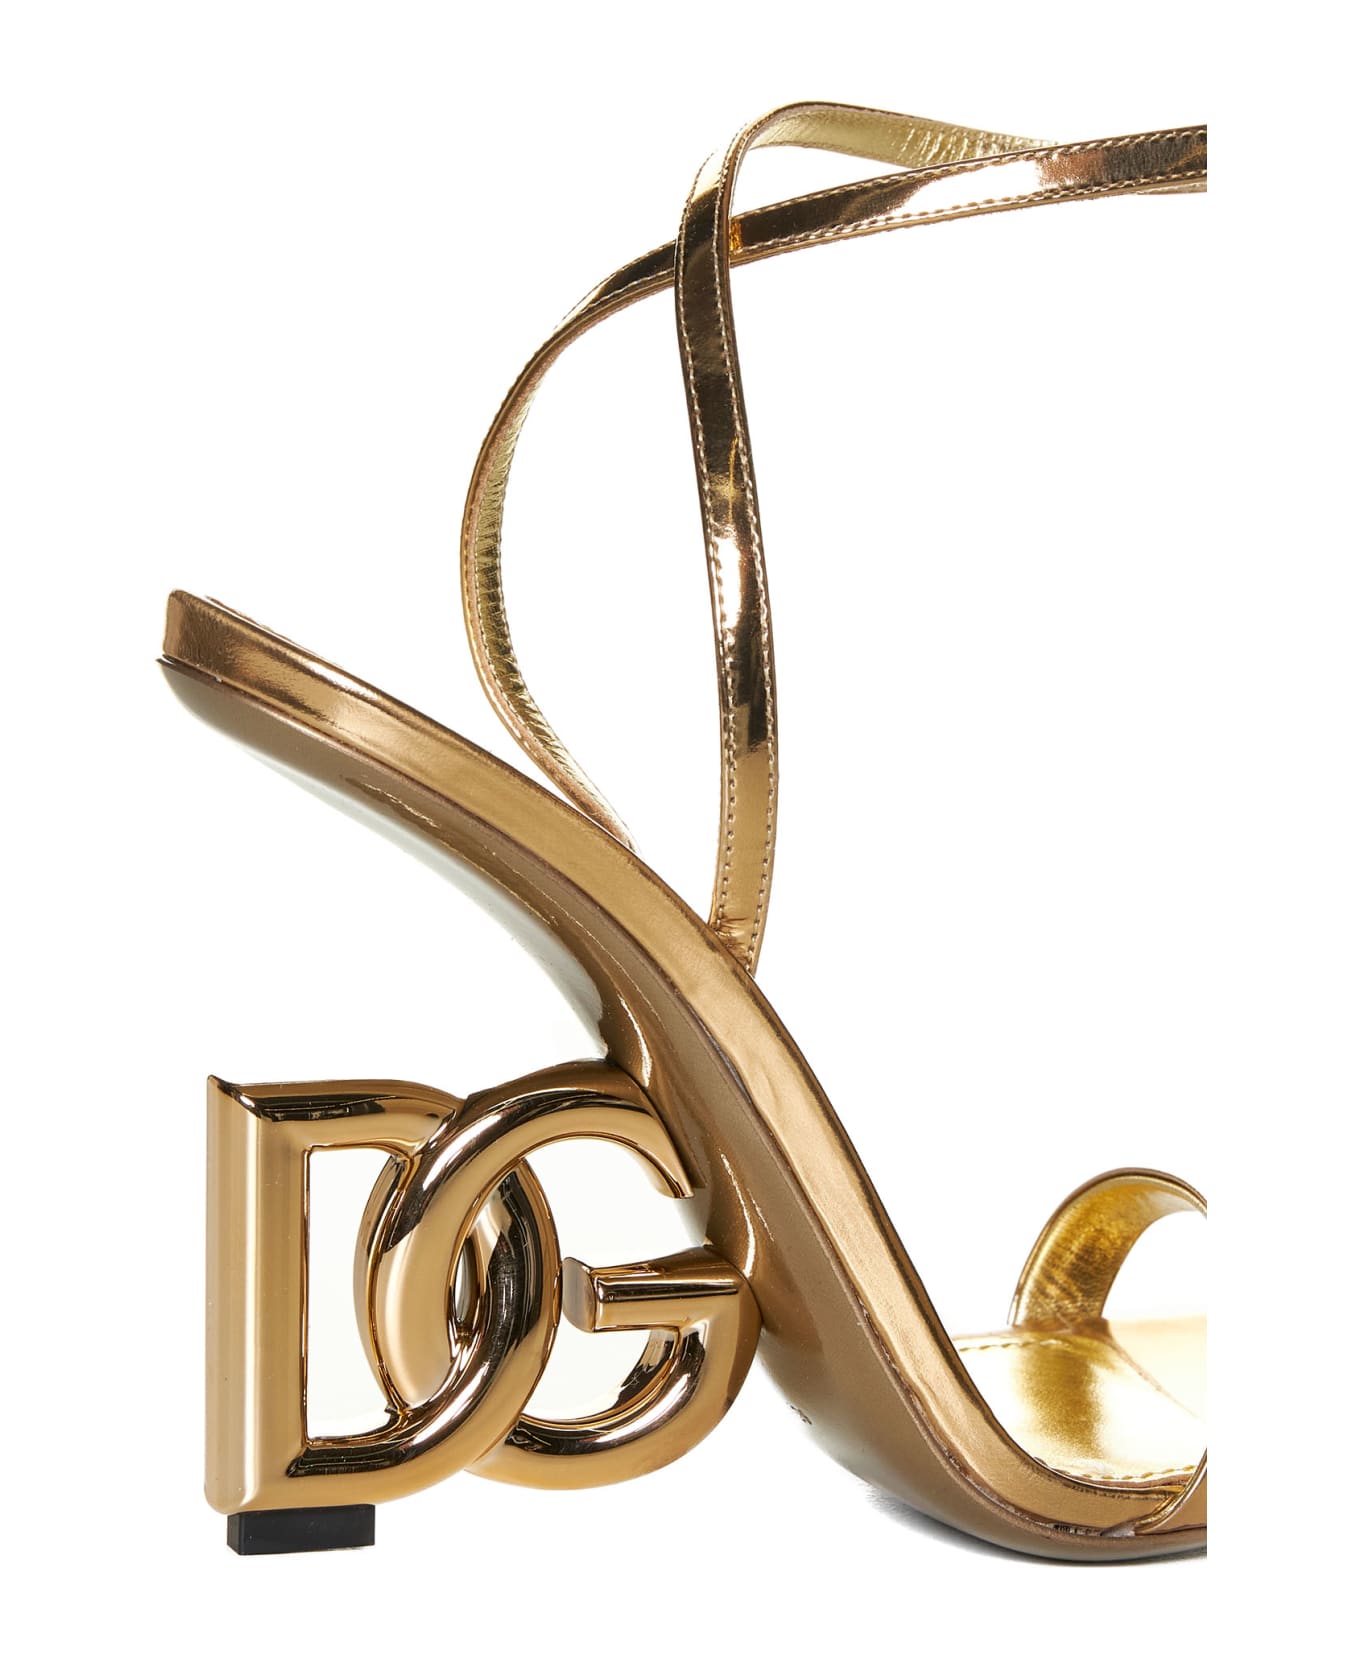 Dolce & Gabbana Dg Logo Pump Sandals - Gold サンダル